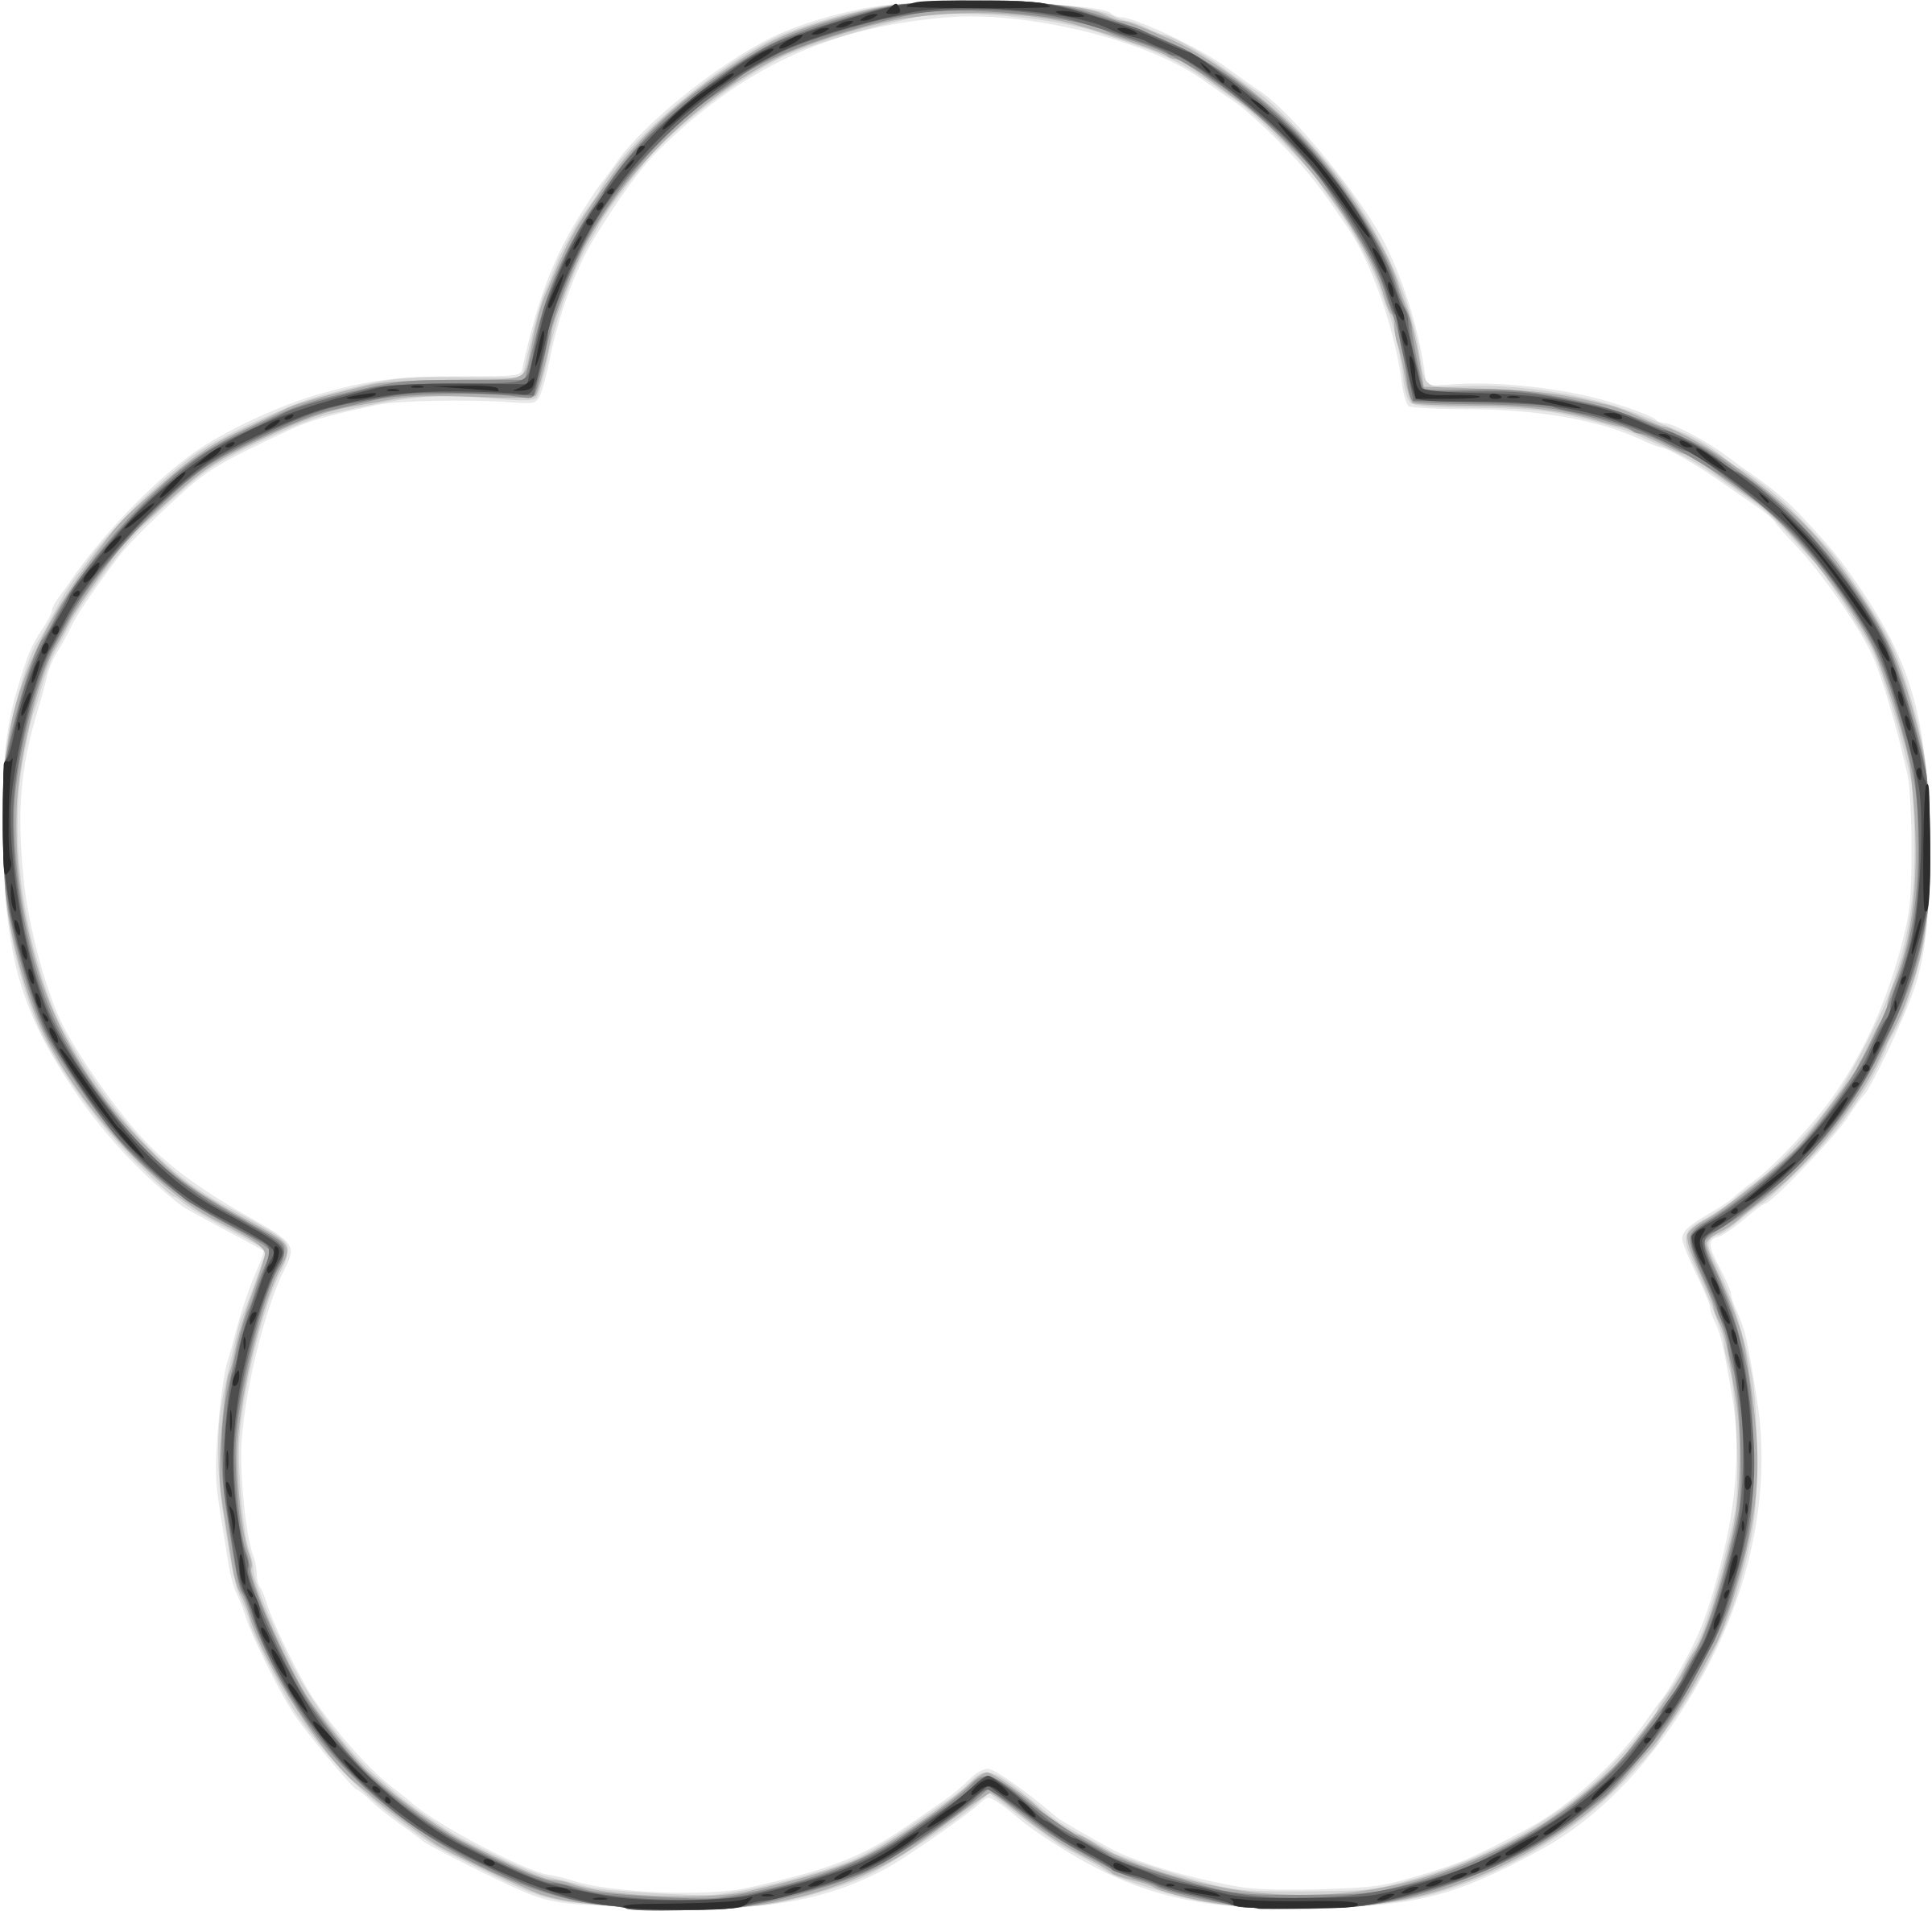 Clipart flower shape. Scallop circle background plain